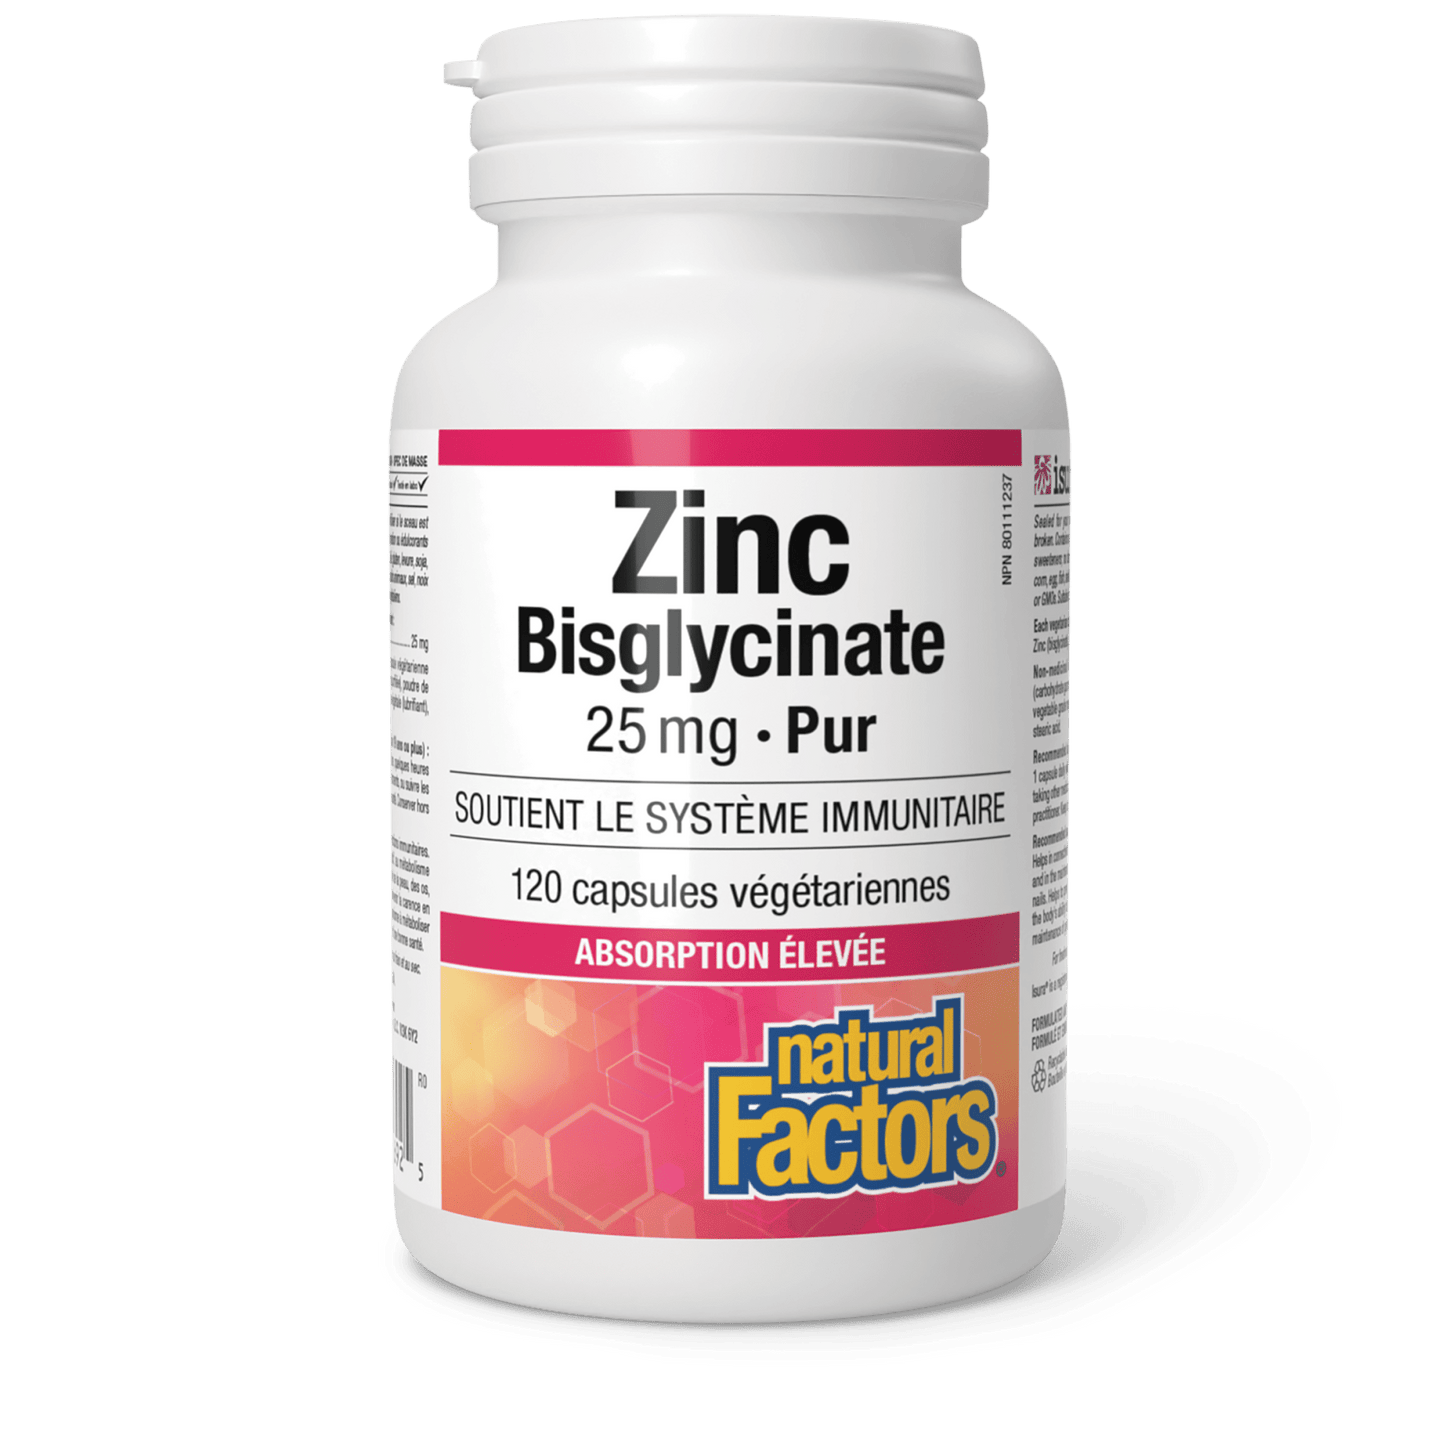 Zinc Bisglycinate Pur 25 mg, Natural Factors|v|image|1692